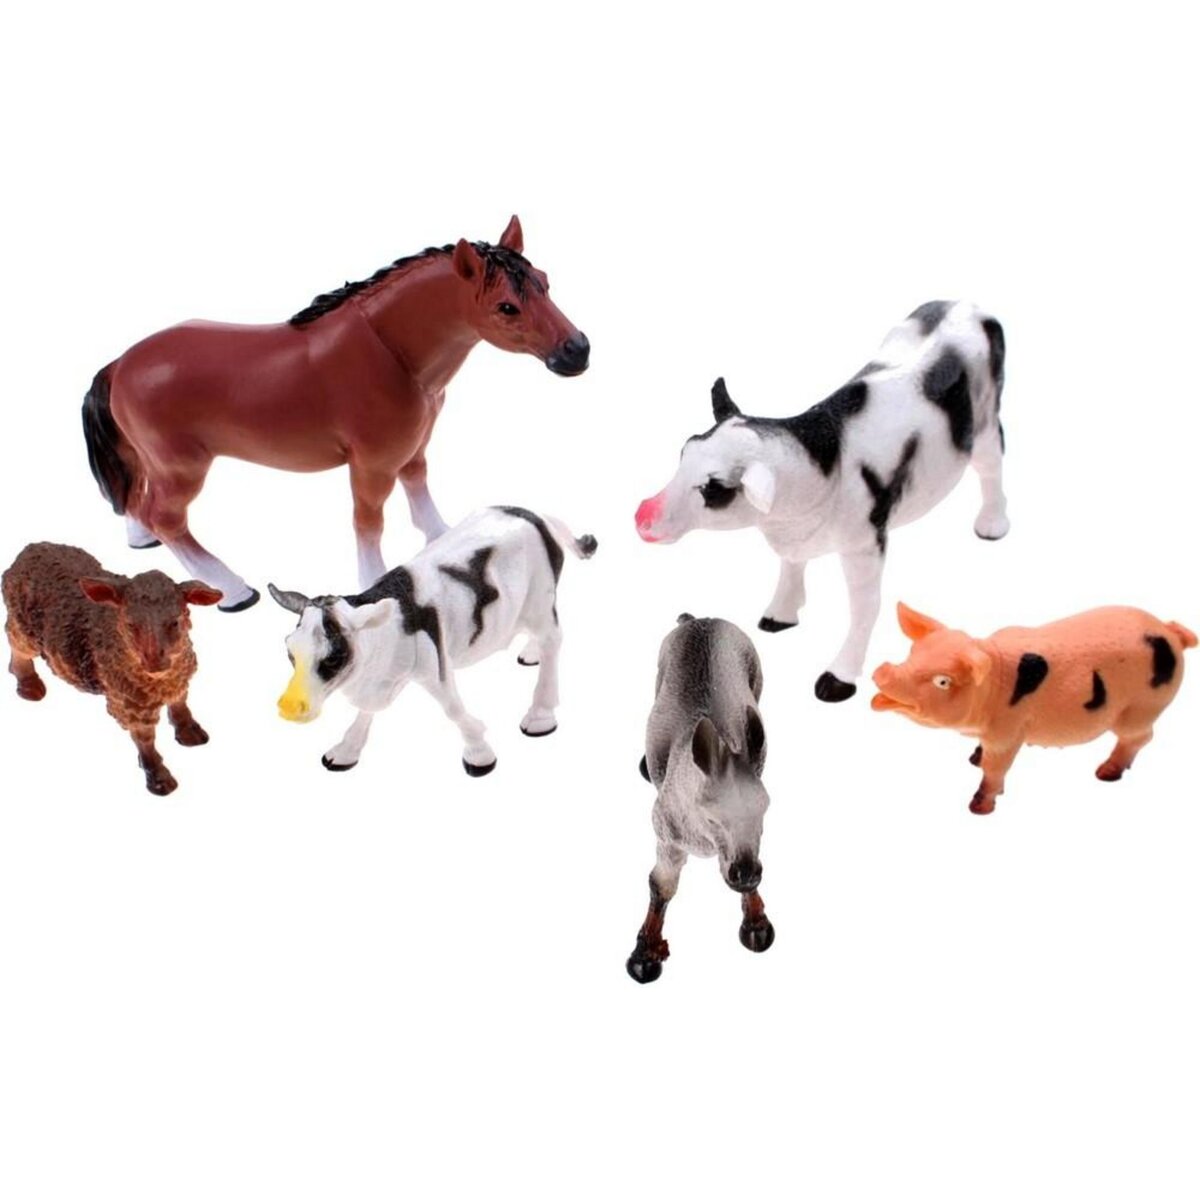  6 animaux ferme animal en plastique jouet enfant